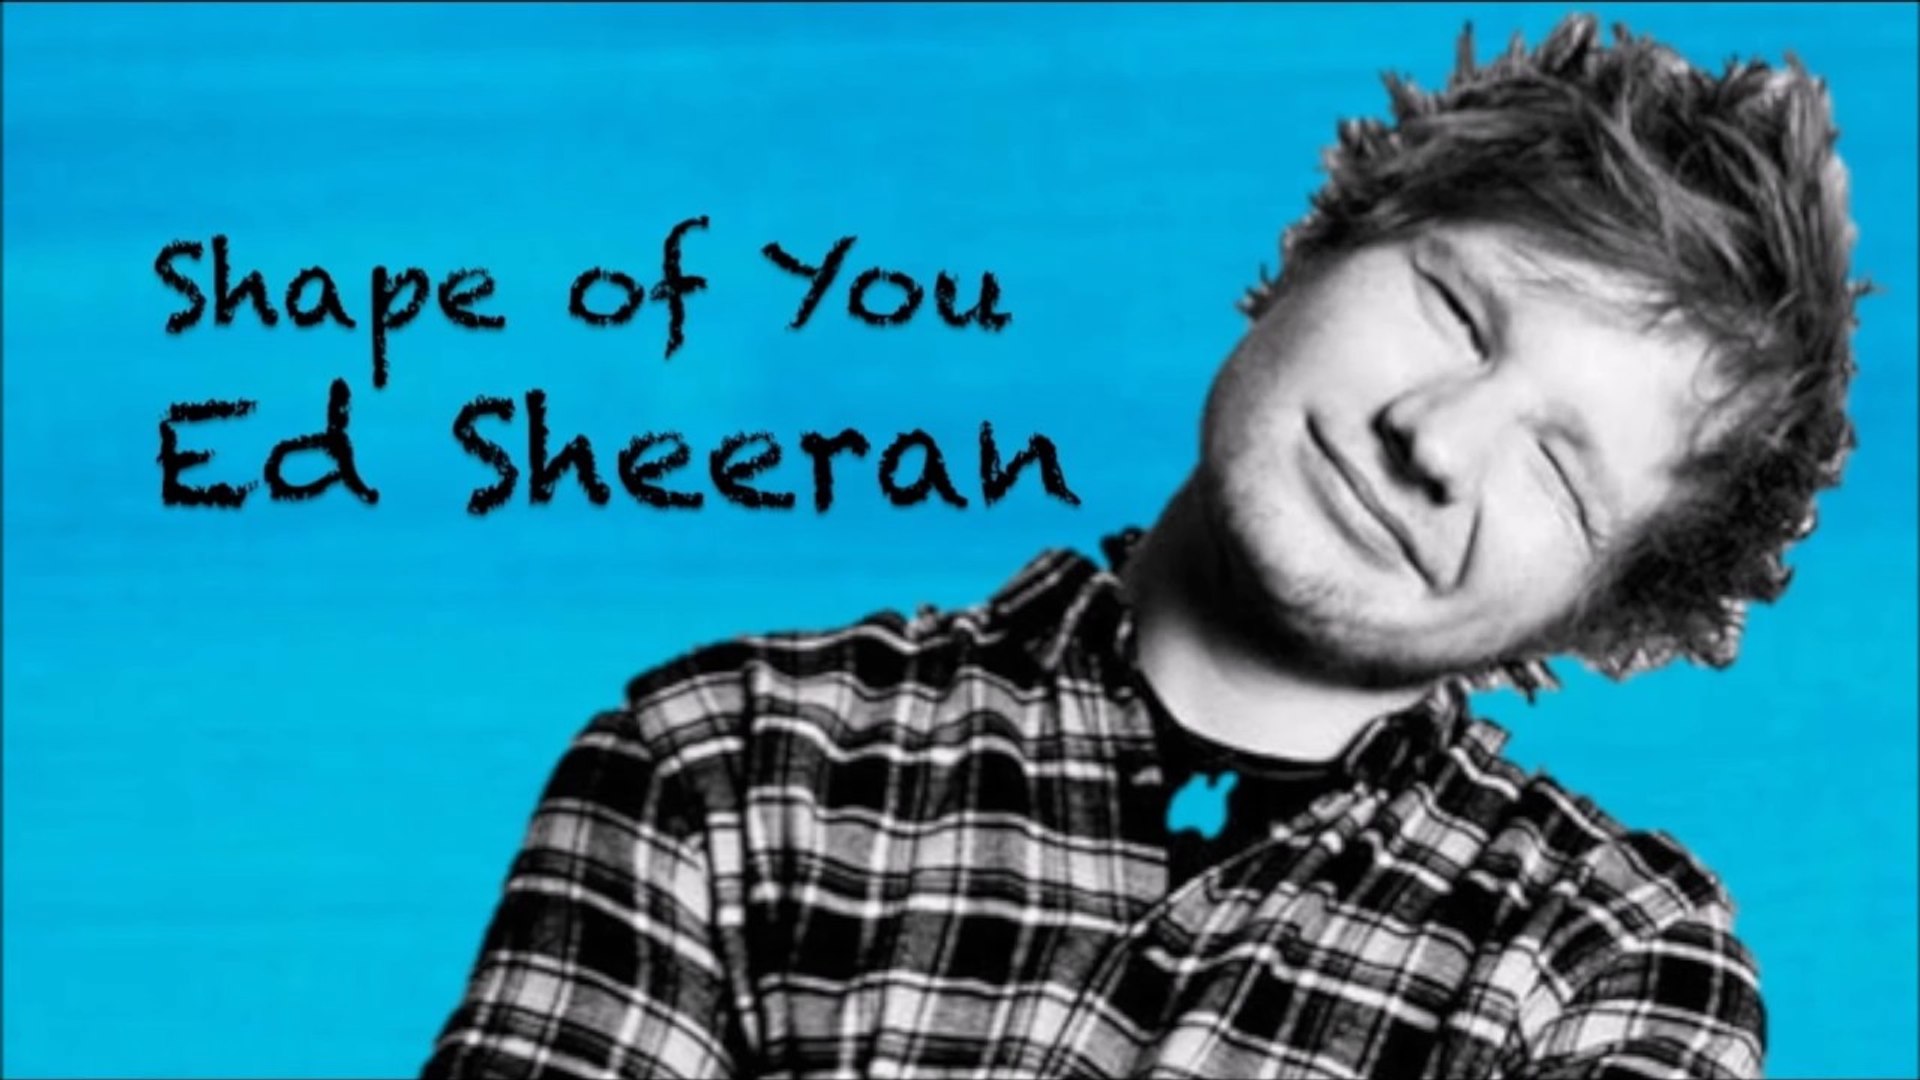 Résultat de recherche d'images pour "ed sheeran shape of you"